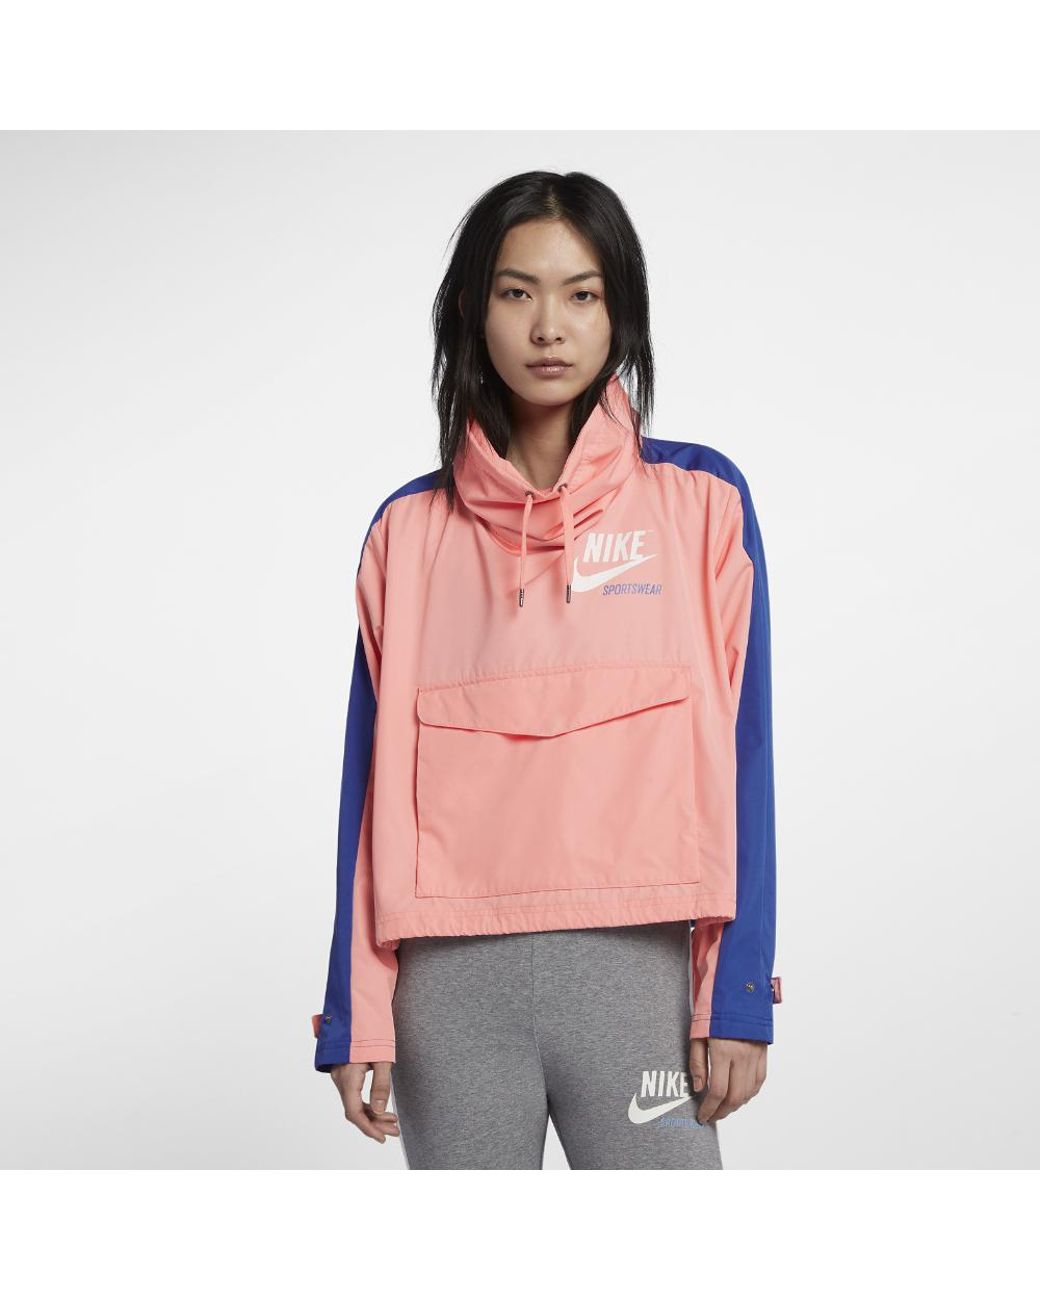 Nike Sportswear Archive Women's Jacket in Pink | Lyst